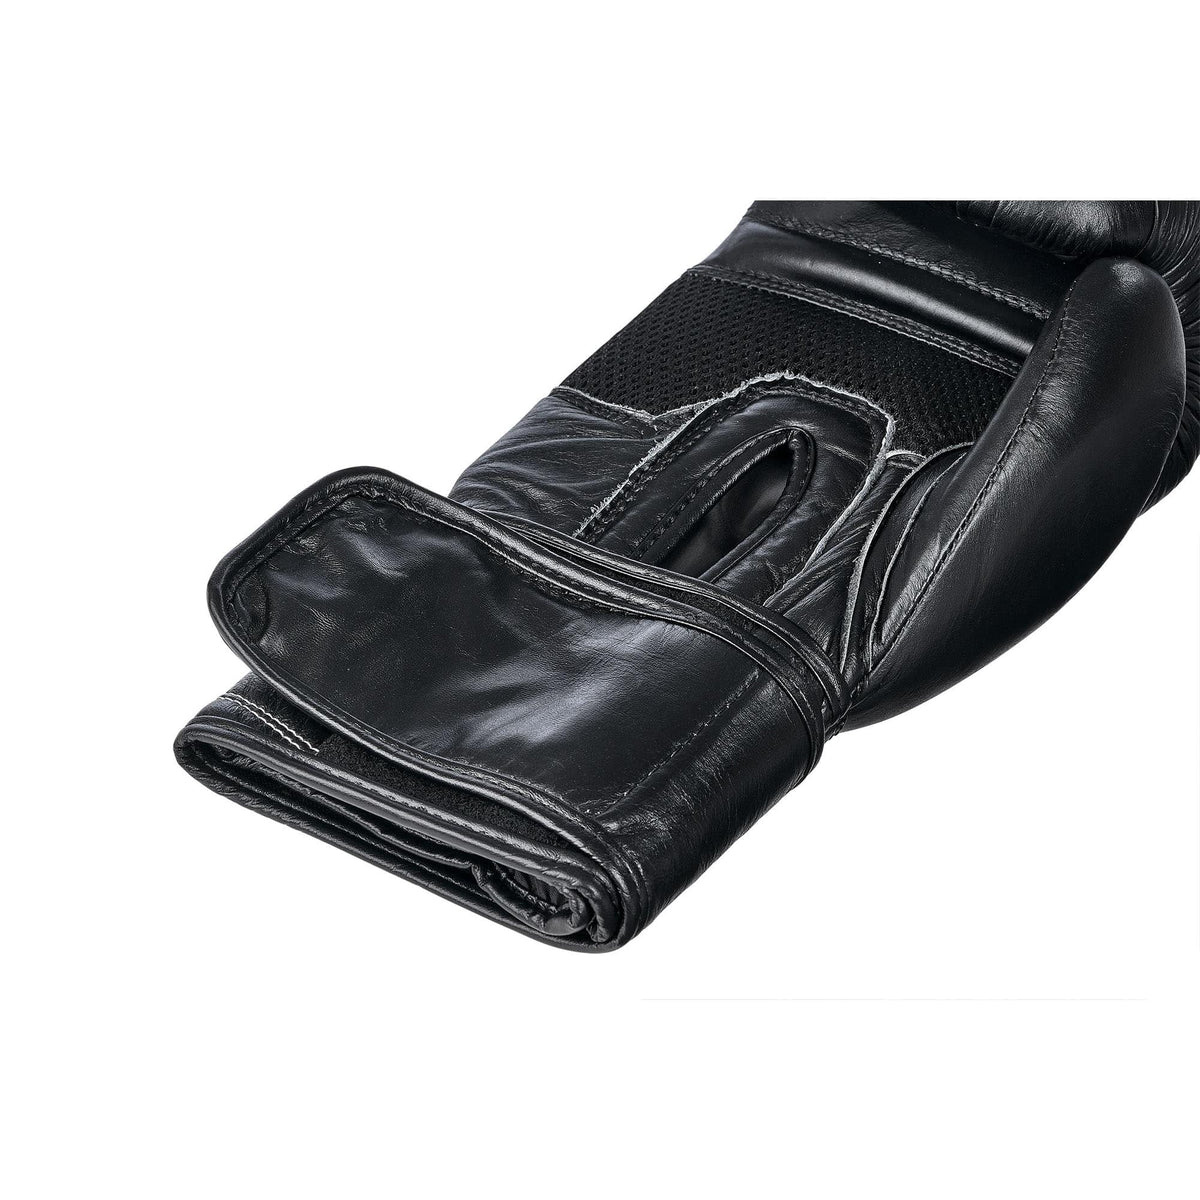 Klettverschluss Innenseite schwarze Boxhandschuhe aus Leder in einer größeren Aufnahme, auch die Innenseite der Boxhandschuhe sind sichtbar 